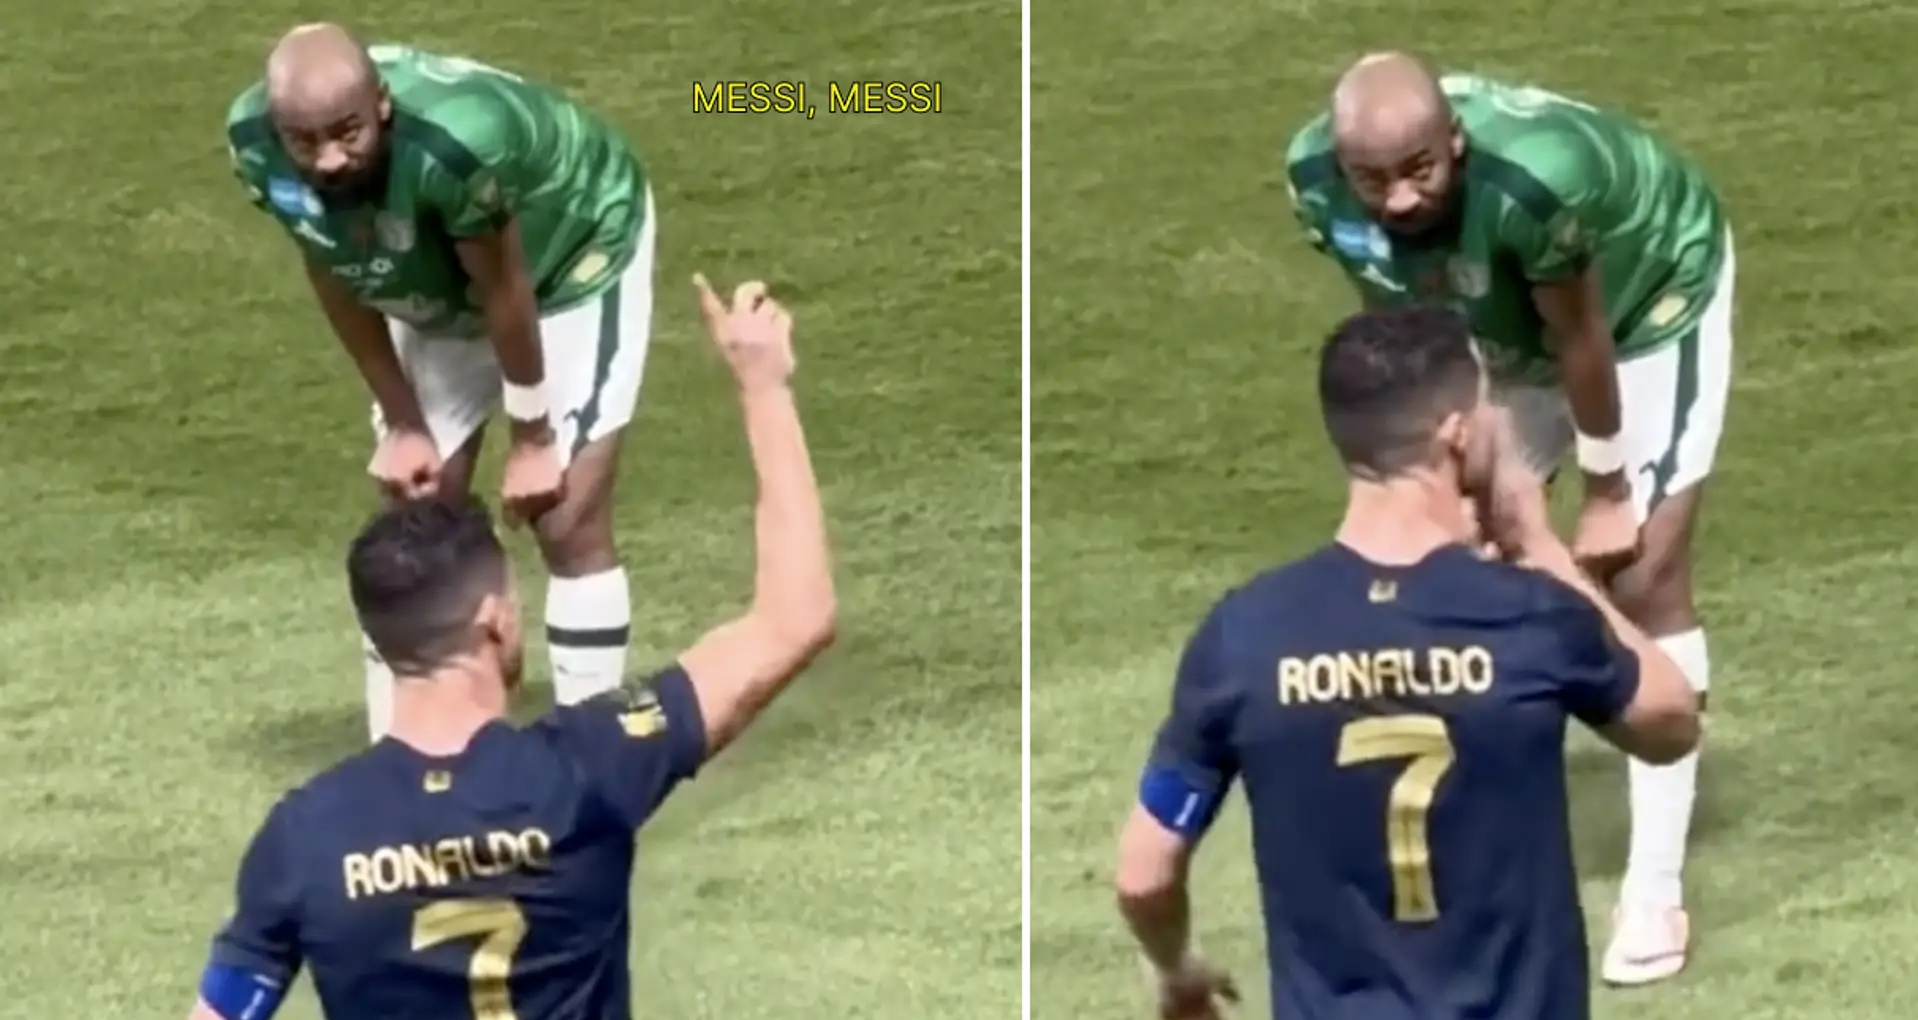 Les fans rivaux scandent le nom de Messi lors du match d'Al Nassr après que Leo ait remporté le 8e Ballon d'Or, la réaction de Ronaldo repérée